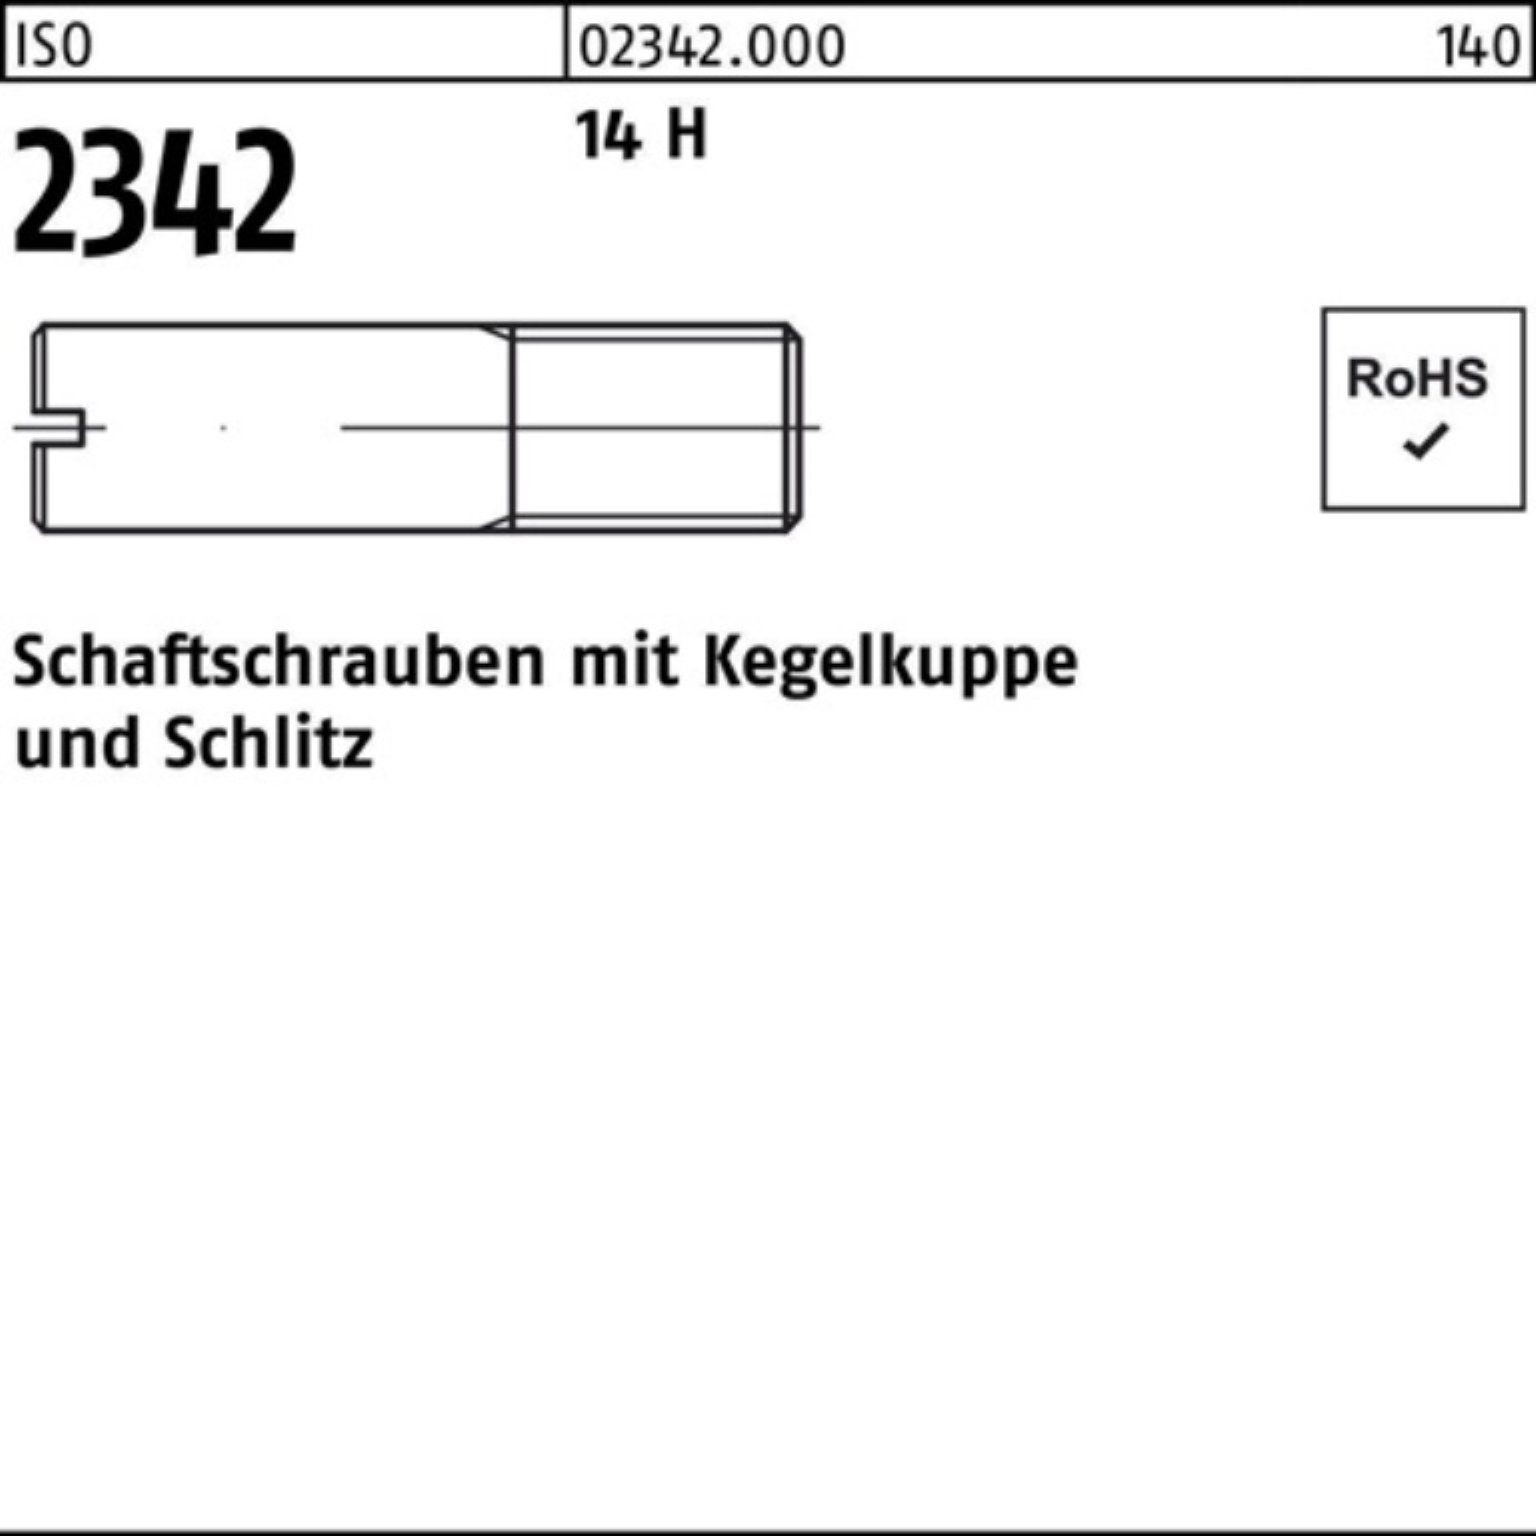 Reyher Schraube 100er Pack Schaftschraube ISO 2342 Kegelkuppe/Schlitz M8x 60 14 H 100